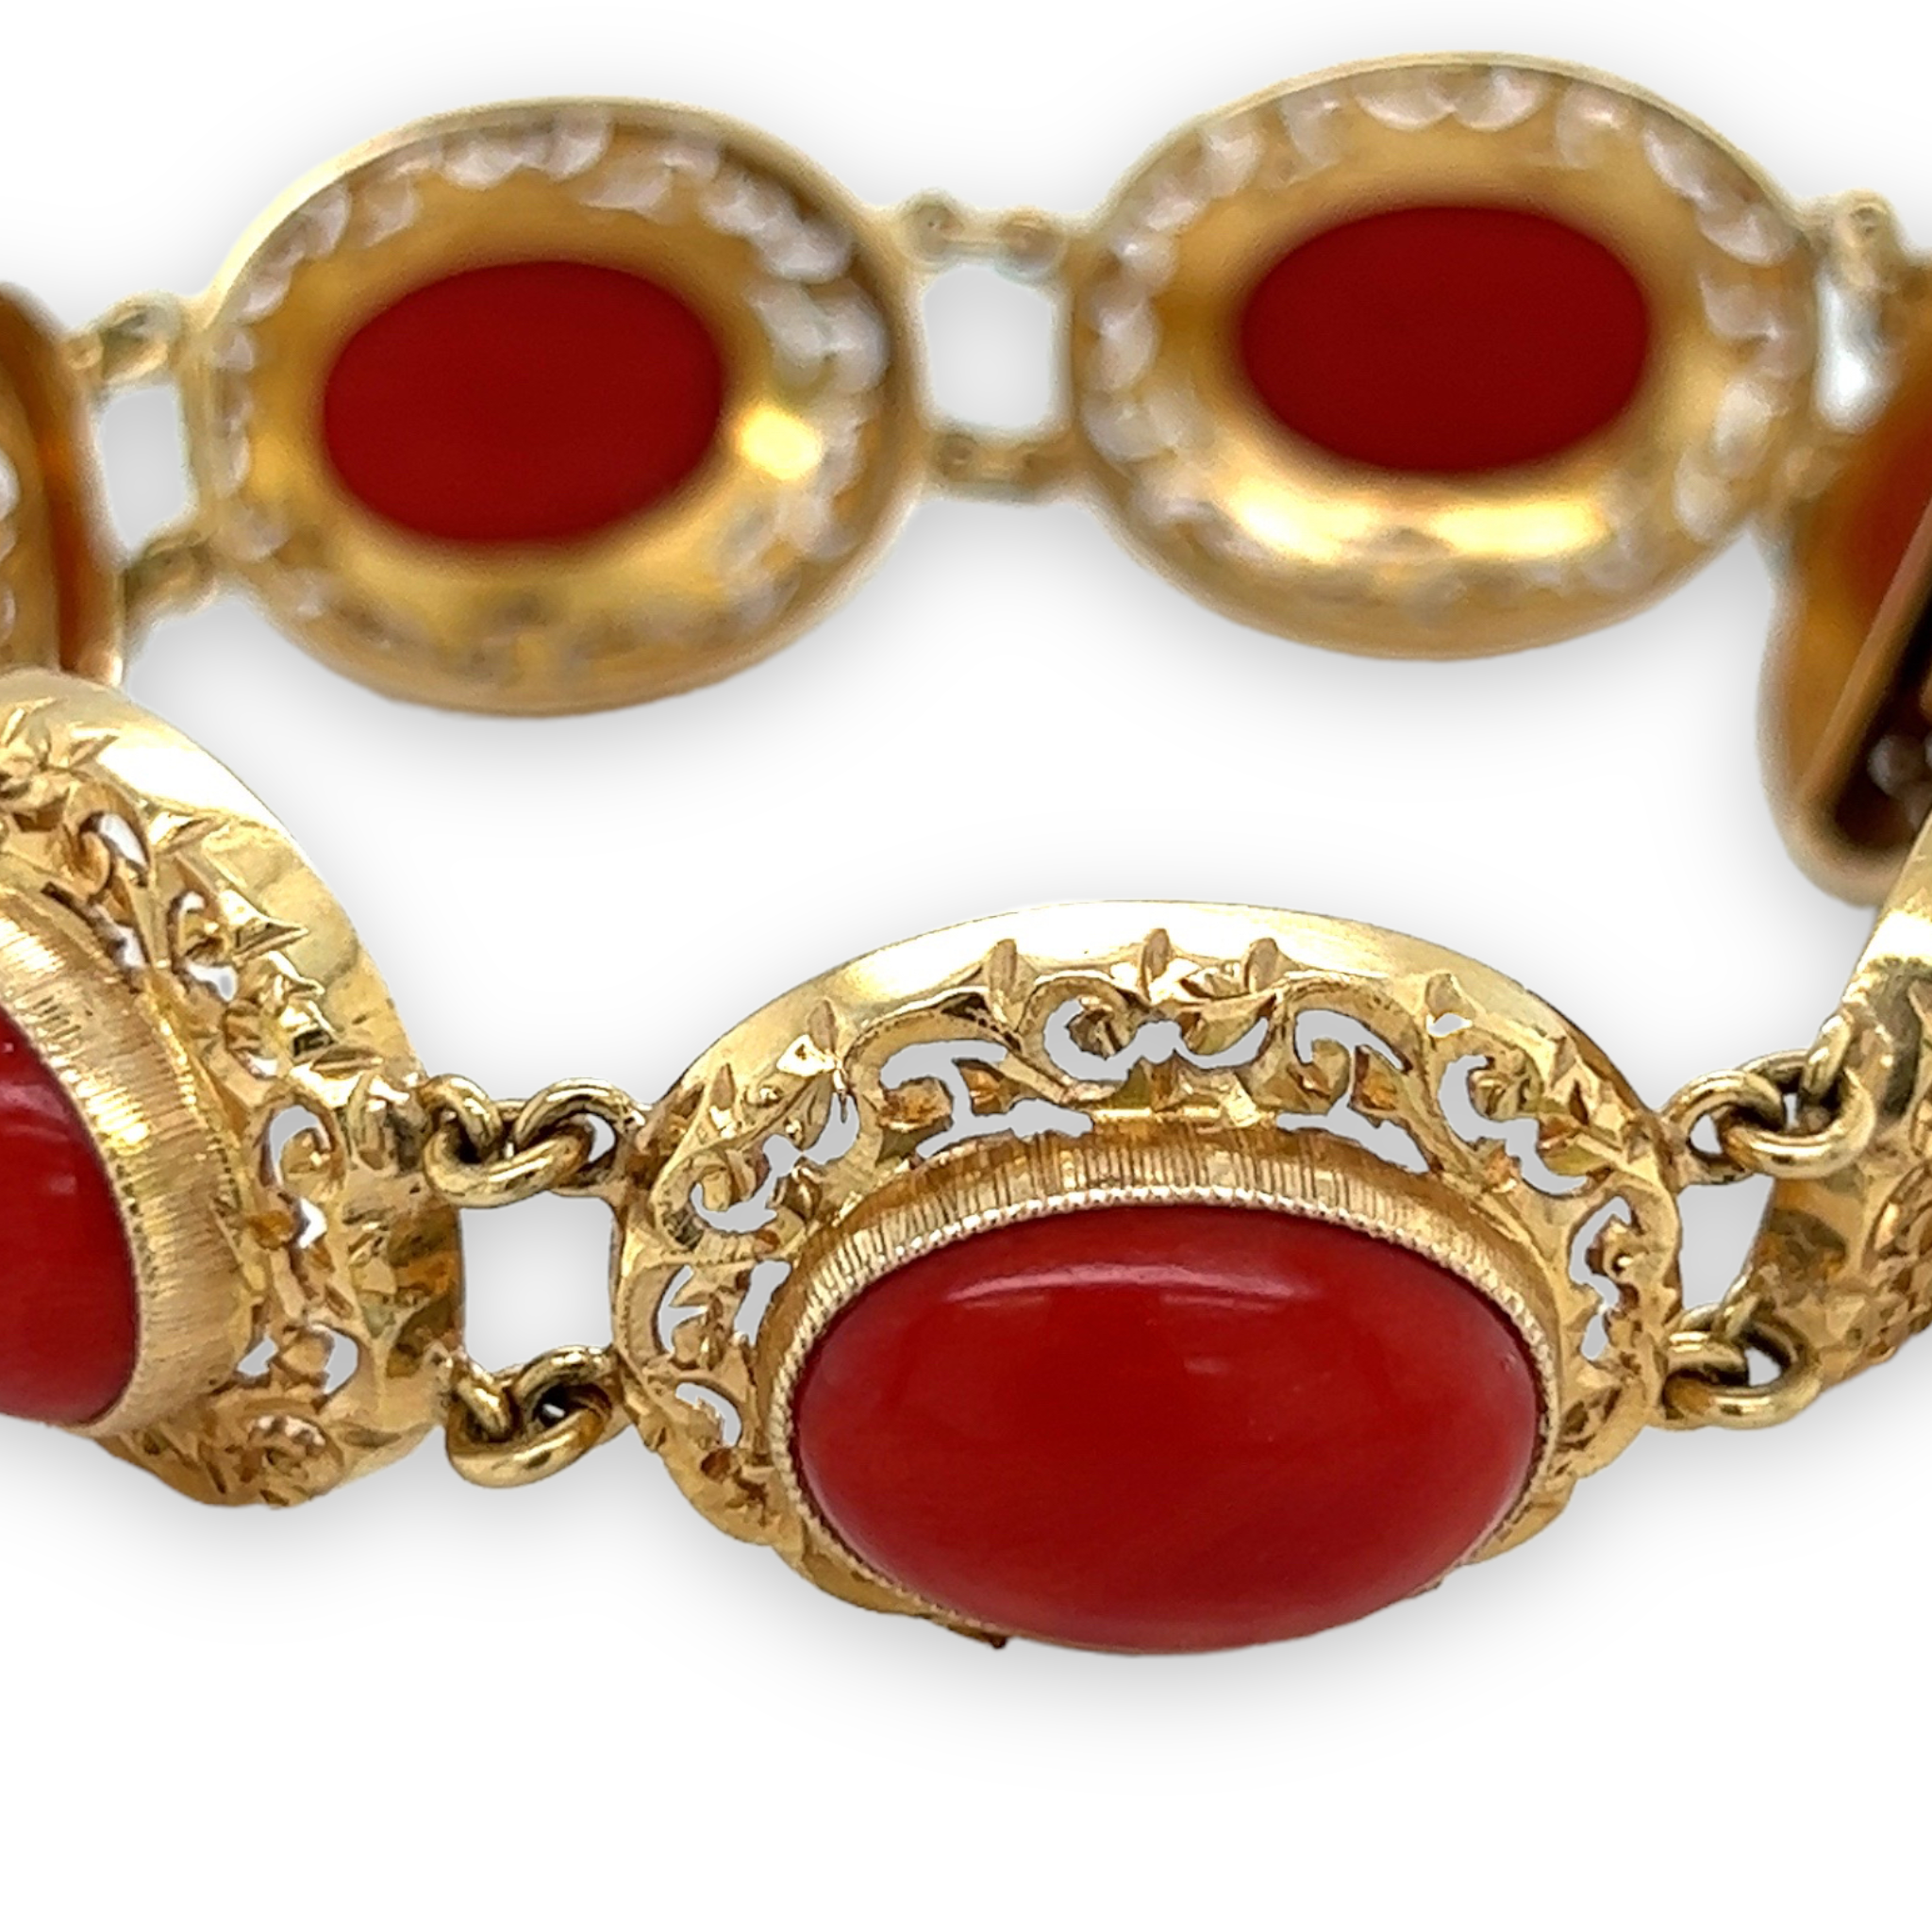 CORAL BRACELET ANTIQUE BIEDERMEIER 1840. Jewellery & Gemstones - Bracelets  - Auctionet